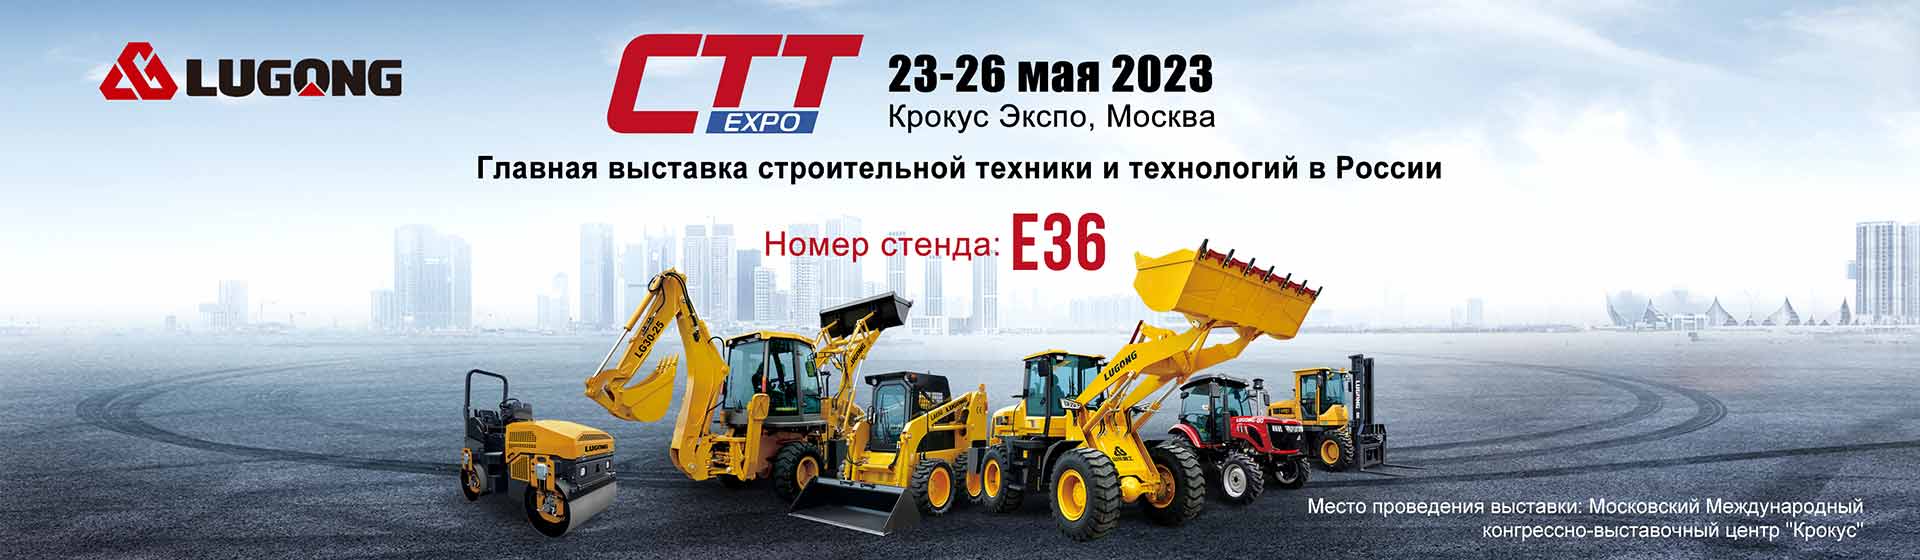 Lugong примет участие в российской выставке СТТ Expo  в мае